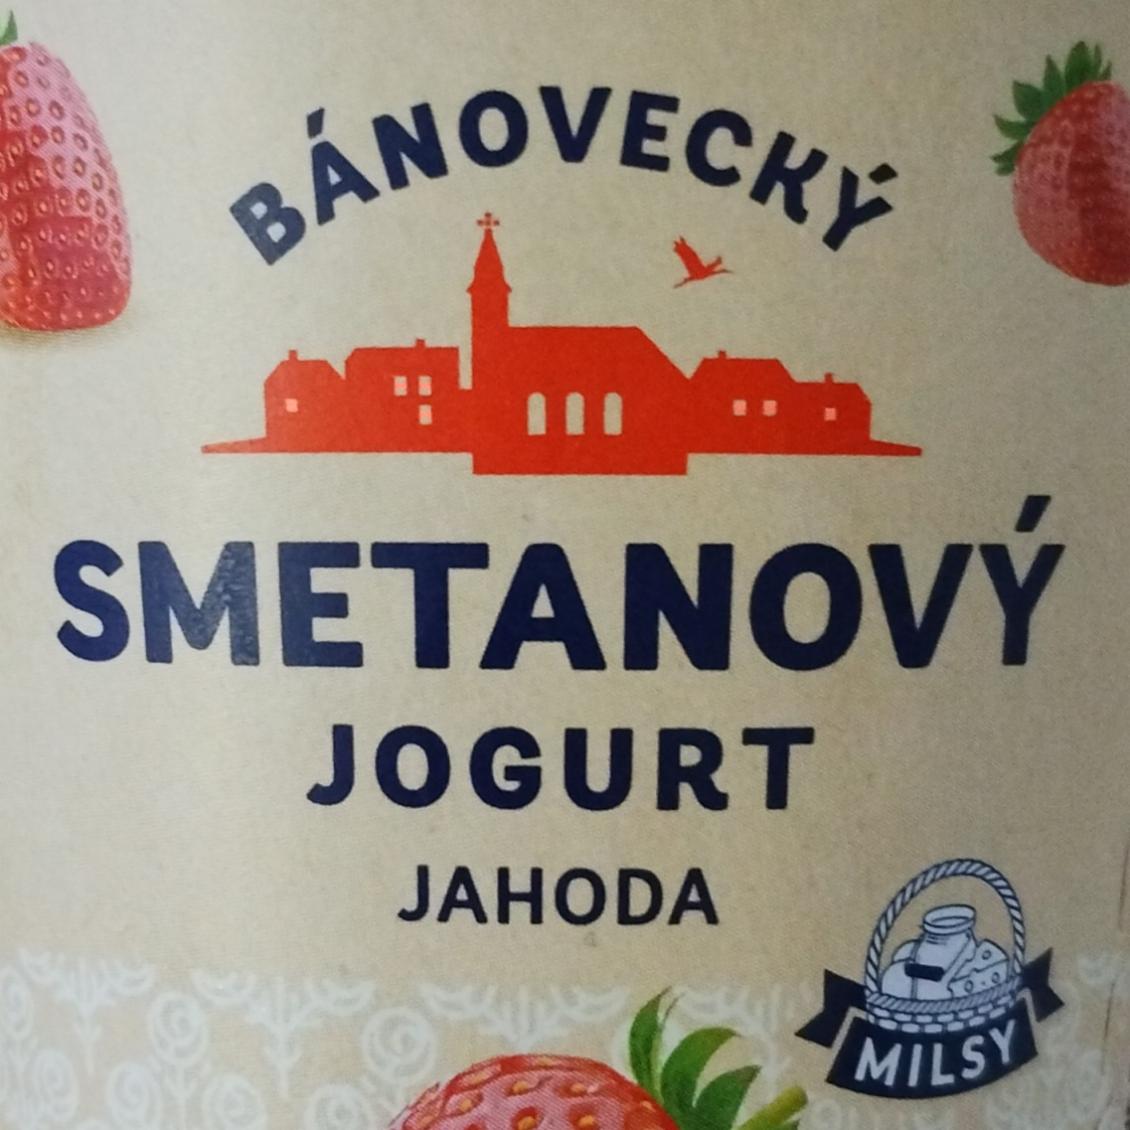 Képek - Smetanový jogurt jahoda Bánovecký